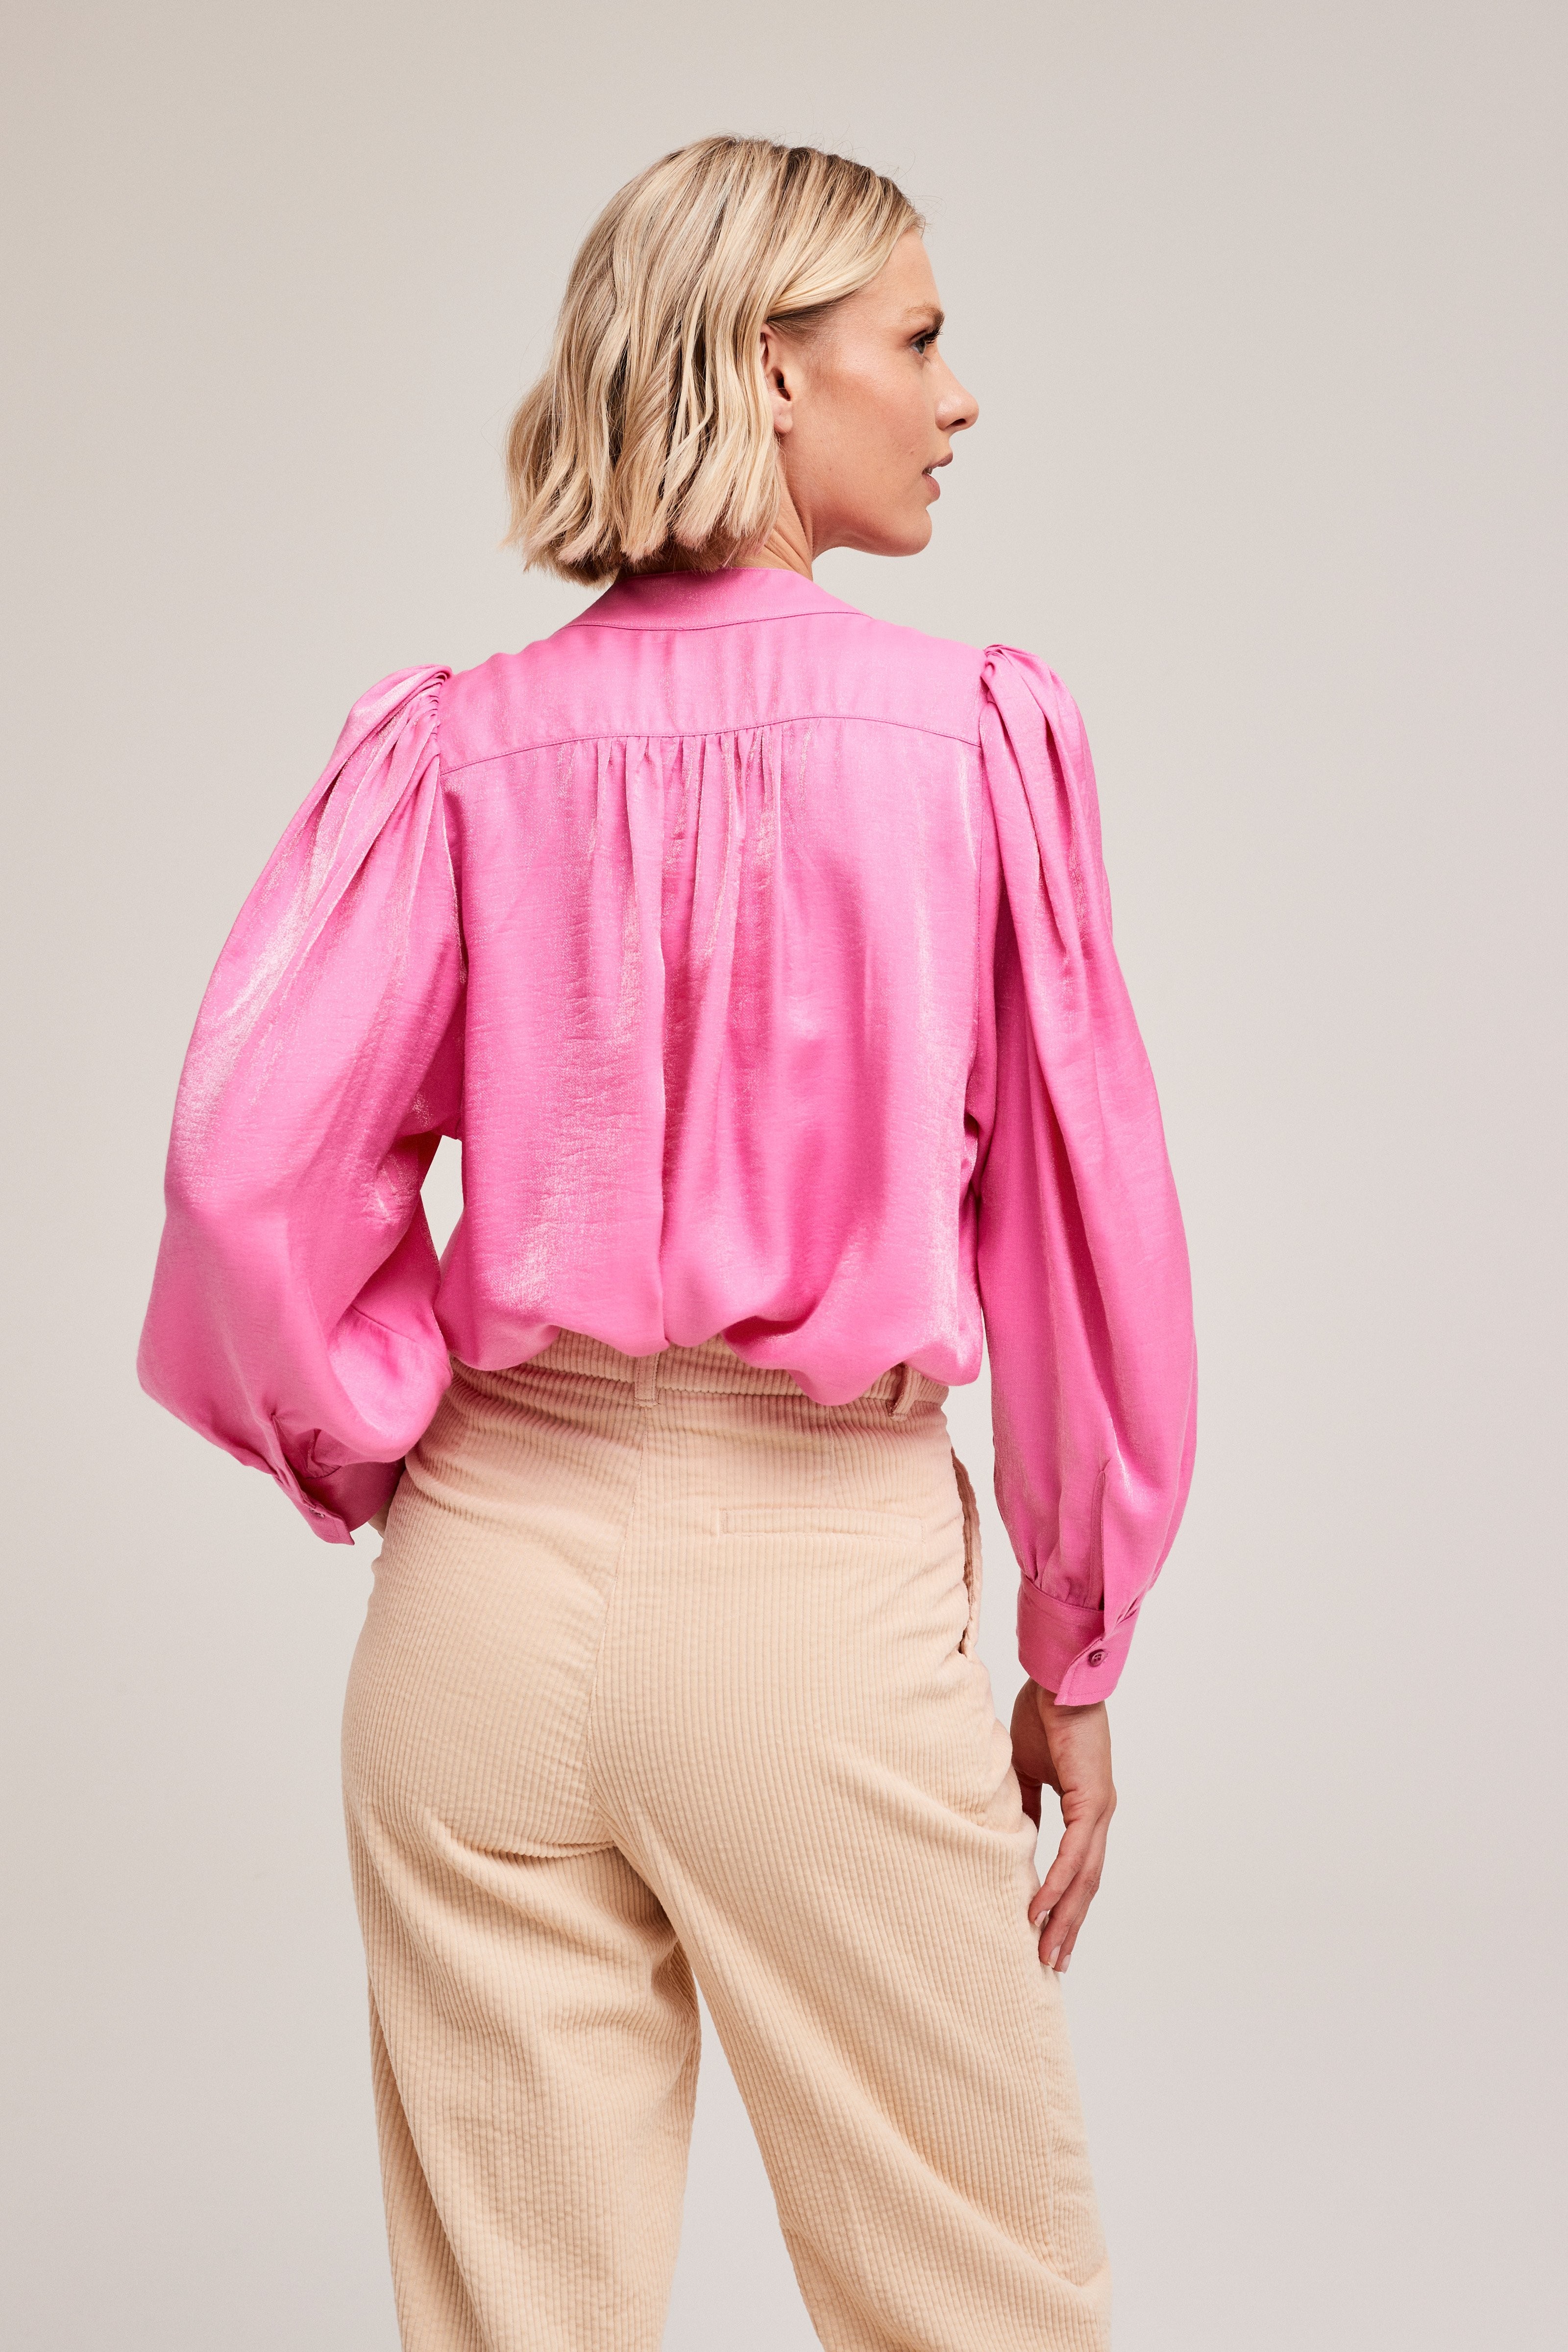 CKS Dames - MICKEYDO - blouse lange mouwen - roze